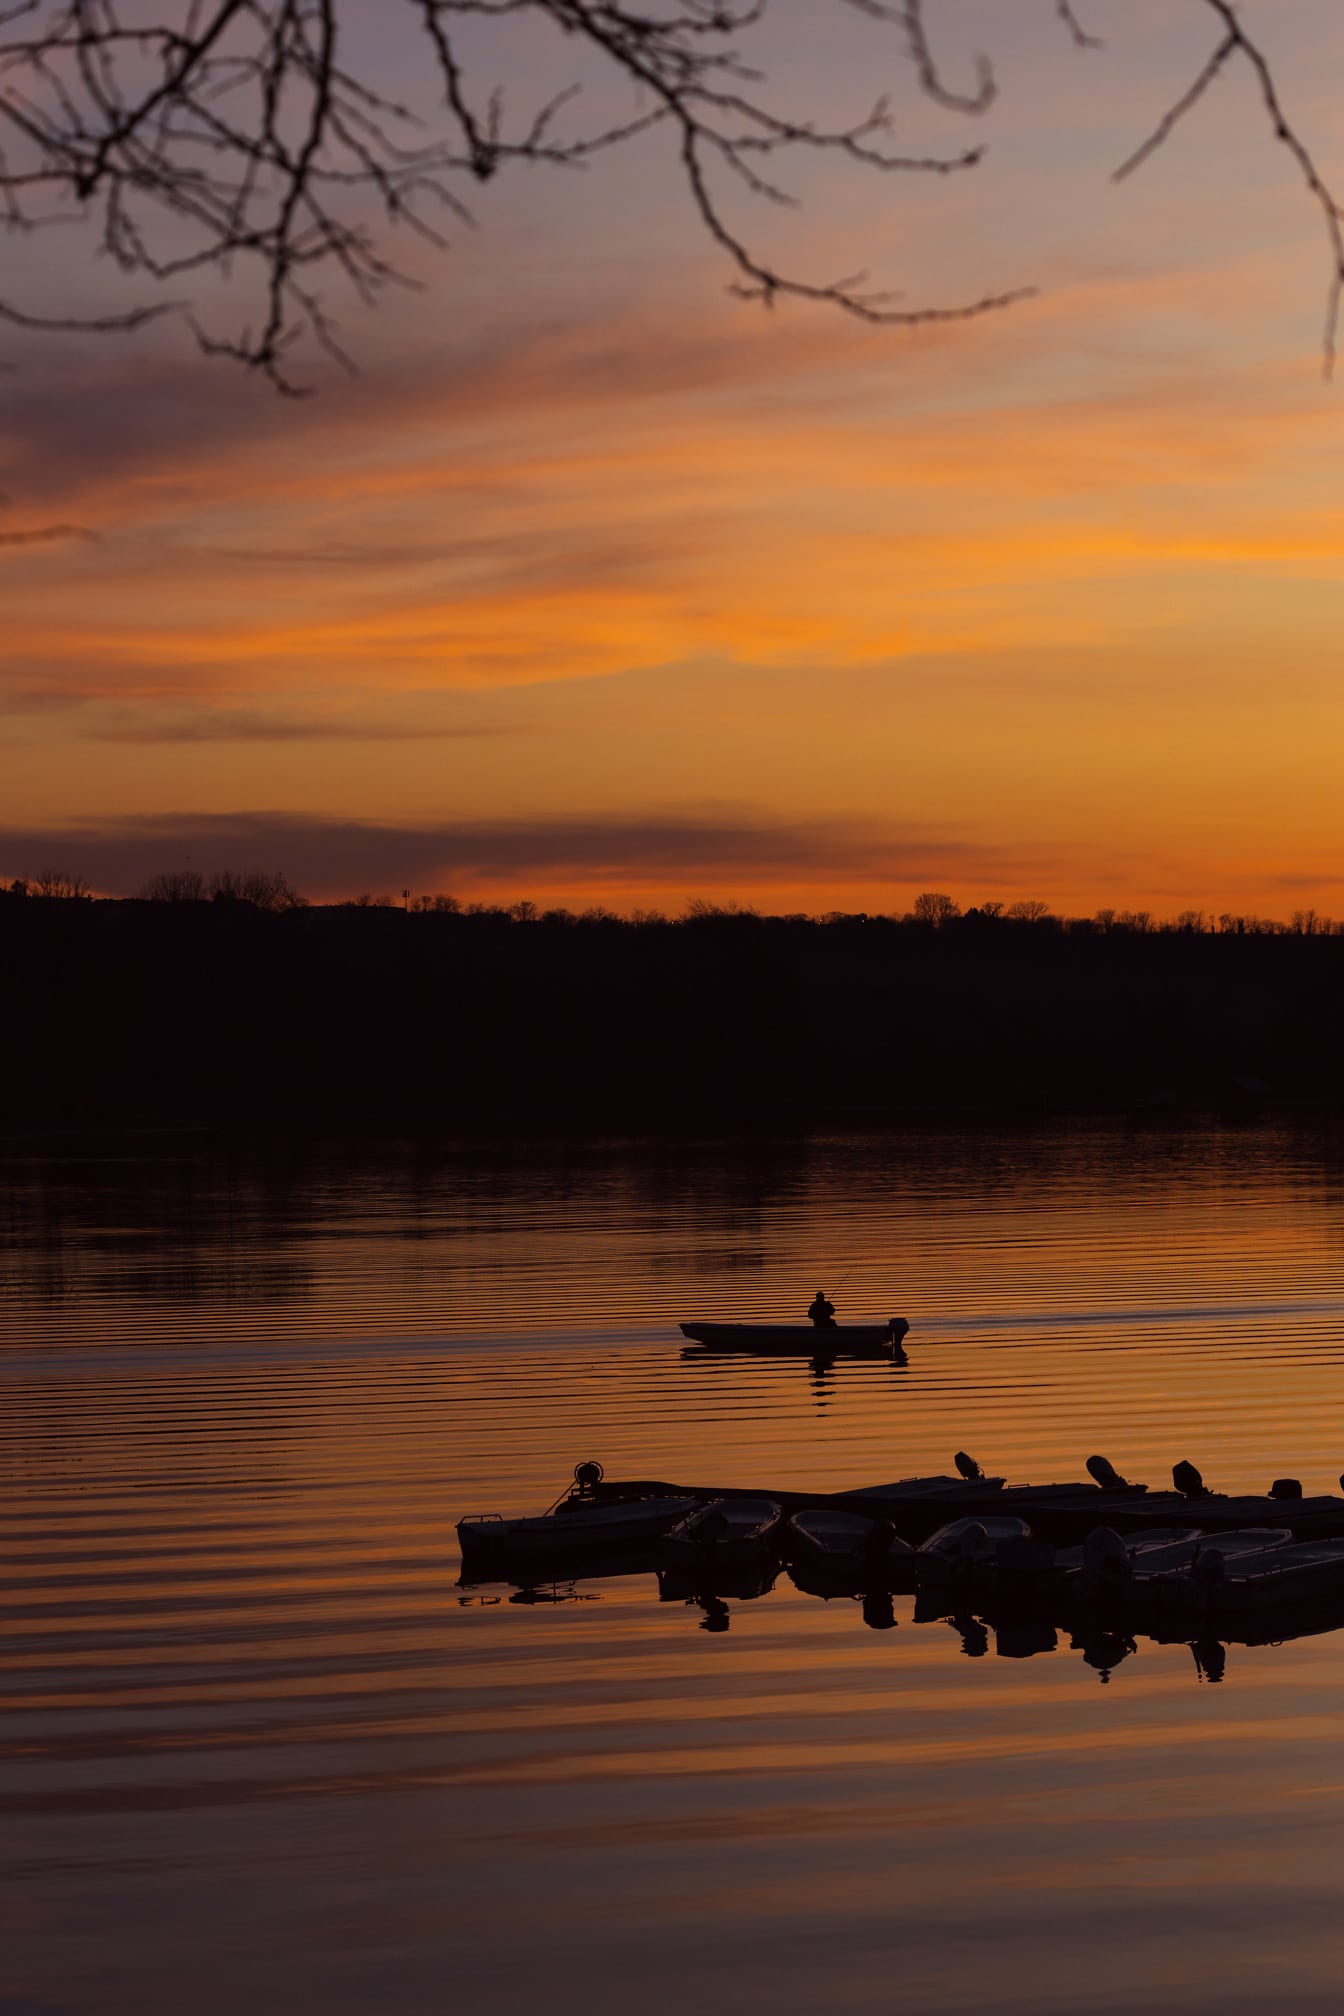 พระอาทิตย์ขึ้นอันน่าทึ่งสีเหลืองอมส้มริมทะเลสาบพร้อมเงาของเรือประมง